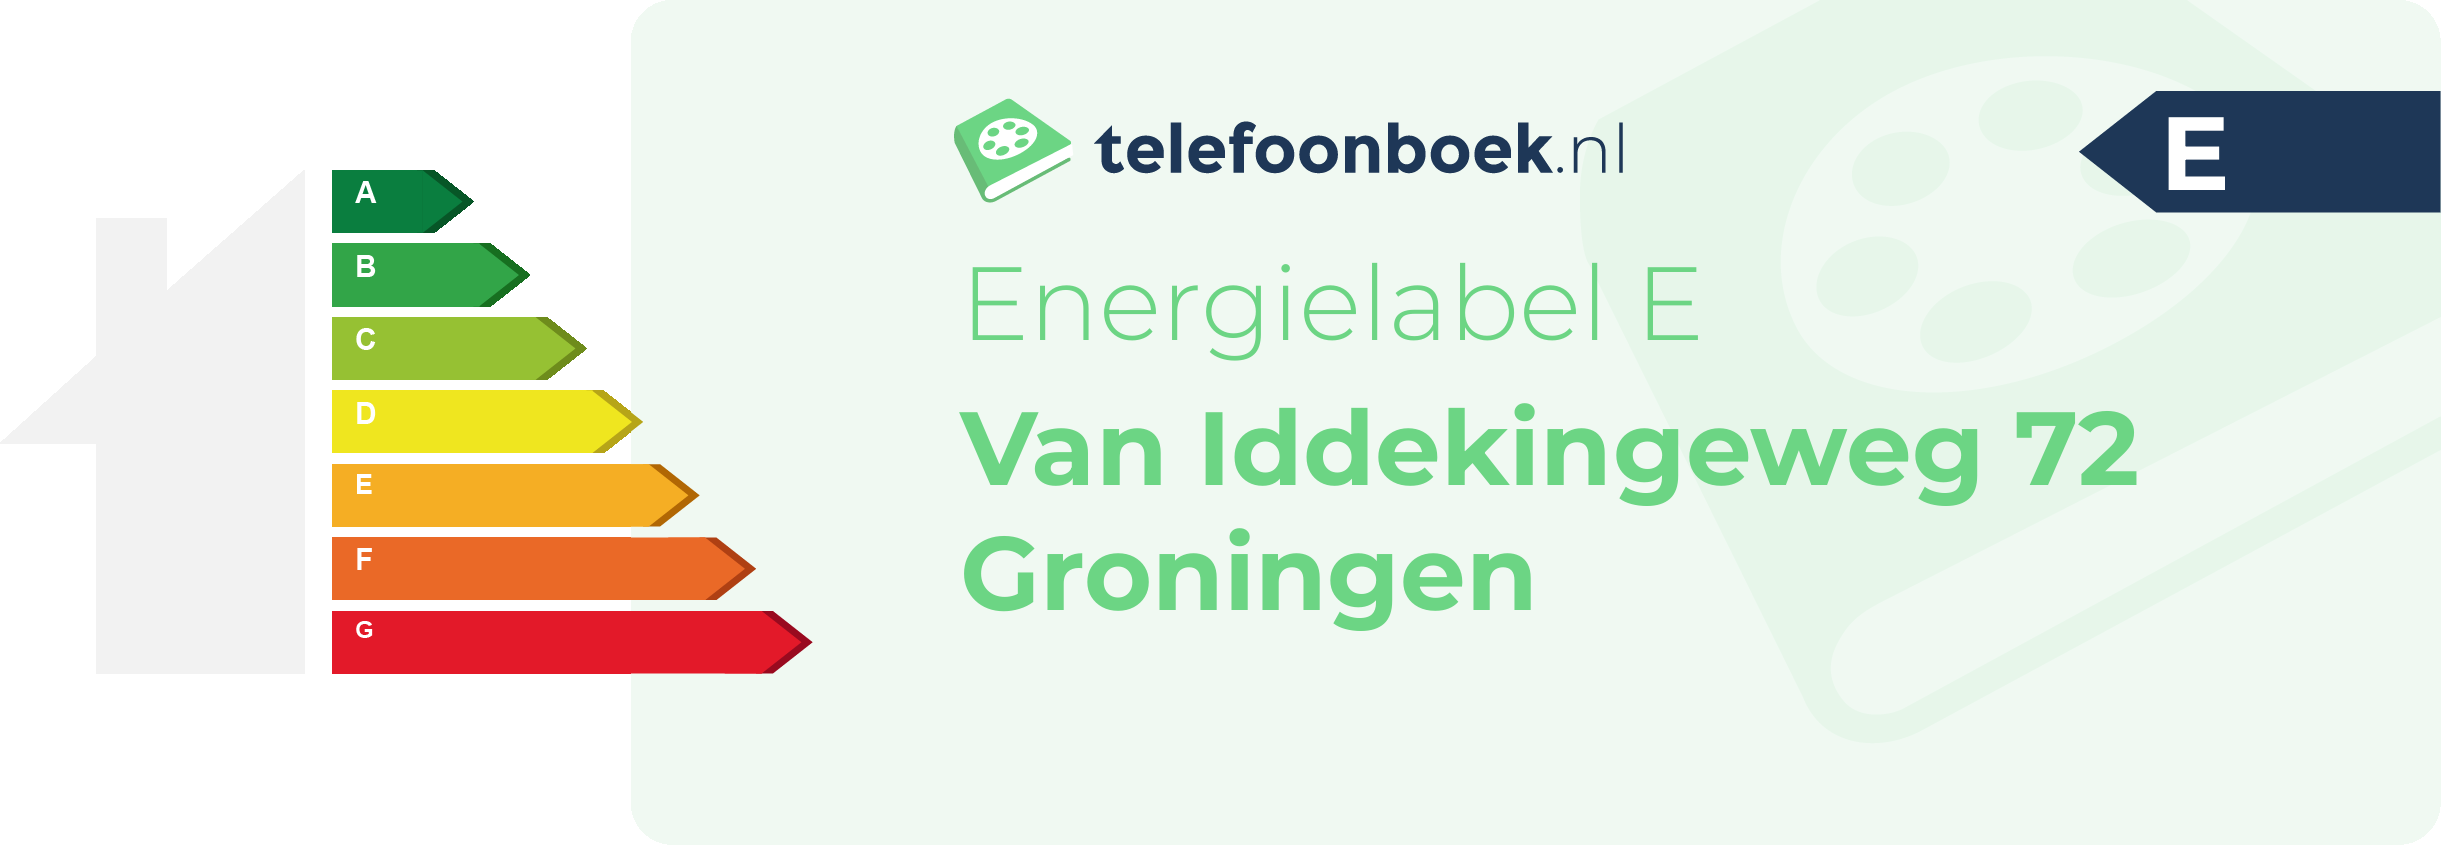 Energielabel Van Iddekingeweg 72 Groningen